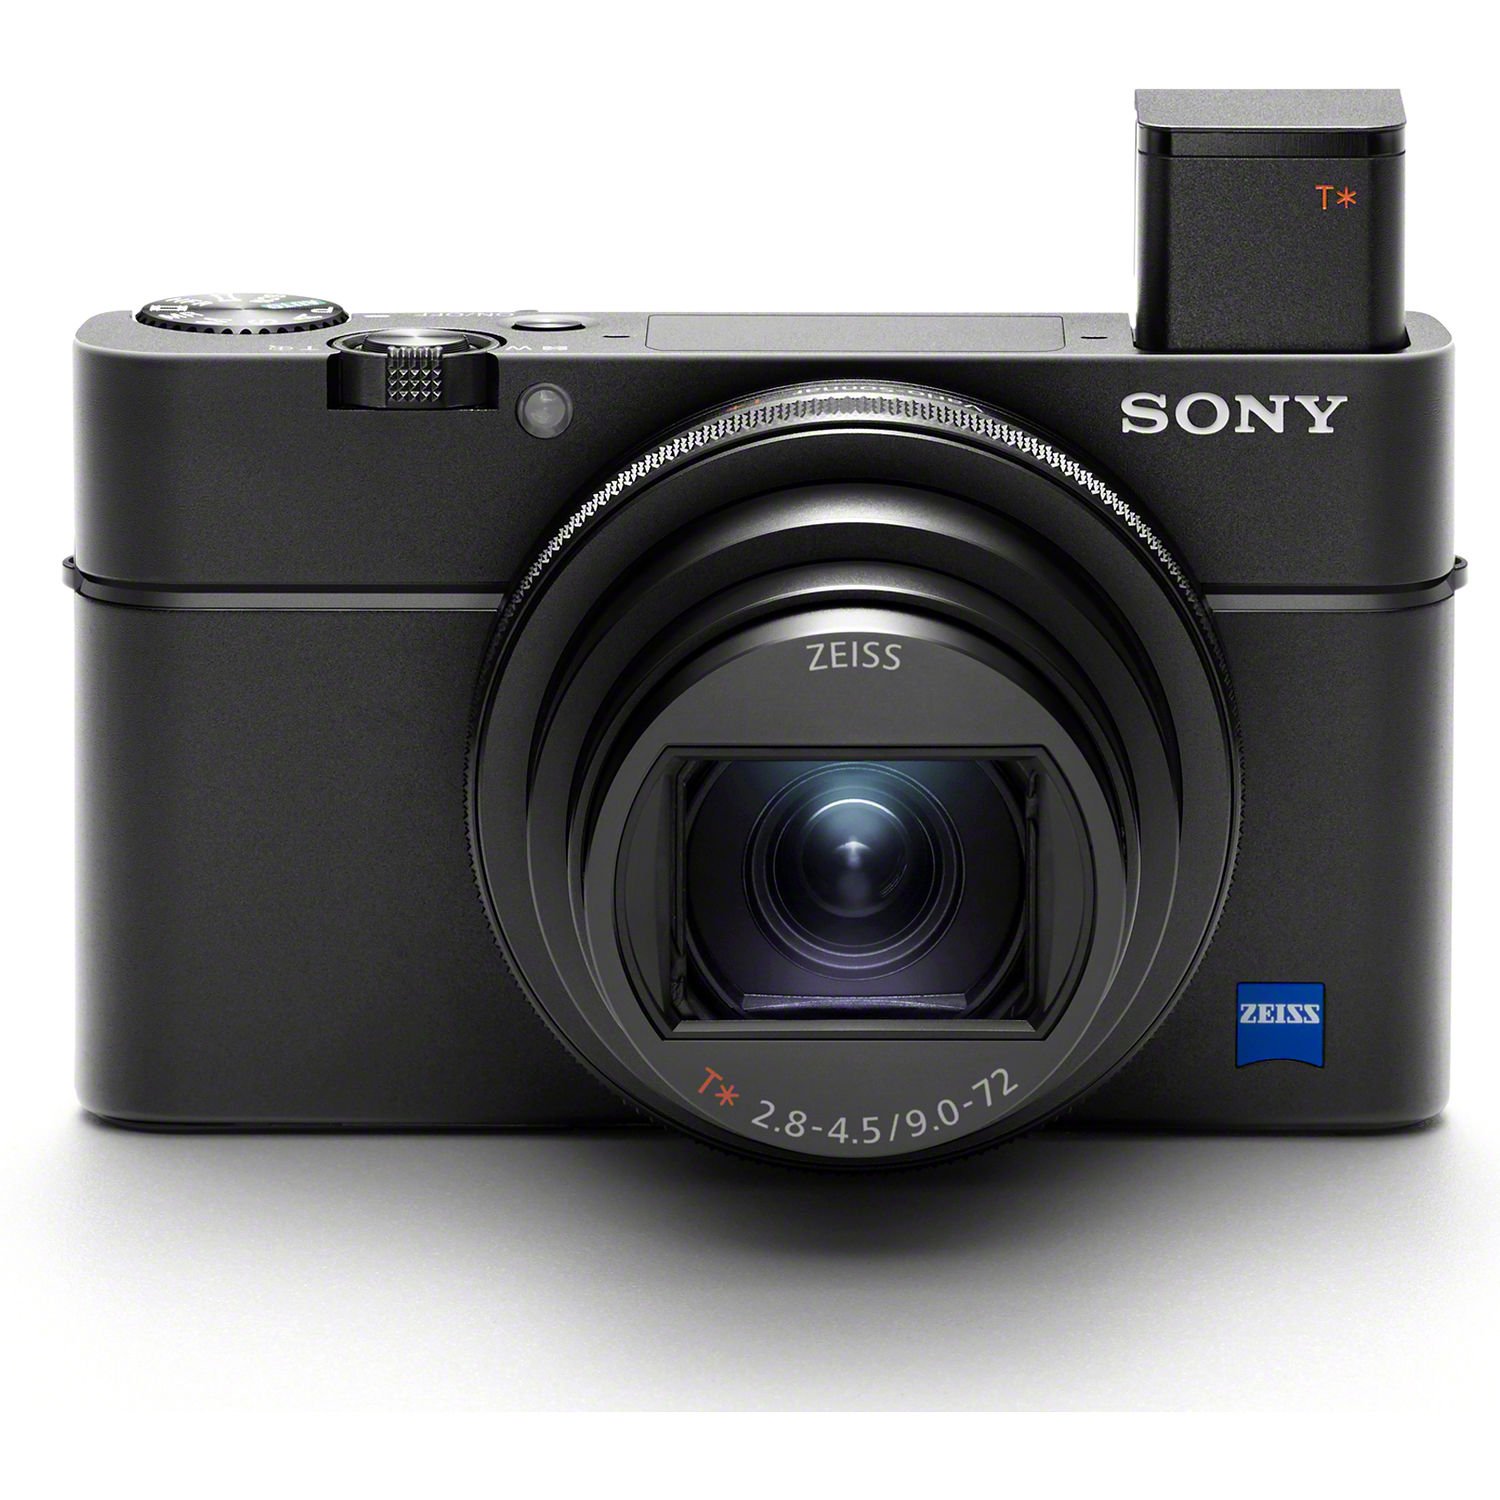 Mang máy ảnh Sony Cyber-shot của bạn đến khắp nơi và bắt đầu tạo ra những bức ảnh đẹp nhất của bạn. Với chất lượng hình ảnh vượt trội và tính năng năng động, máy ảnh này sẽ giúp bạn chụp những khoảnh khắc đáng nhớ nhất trong cuộc đời bạn.